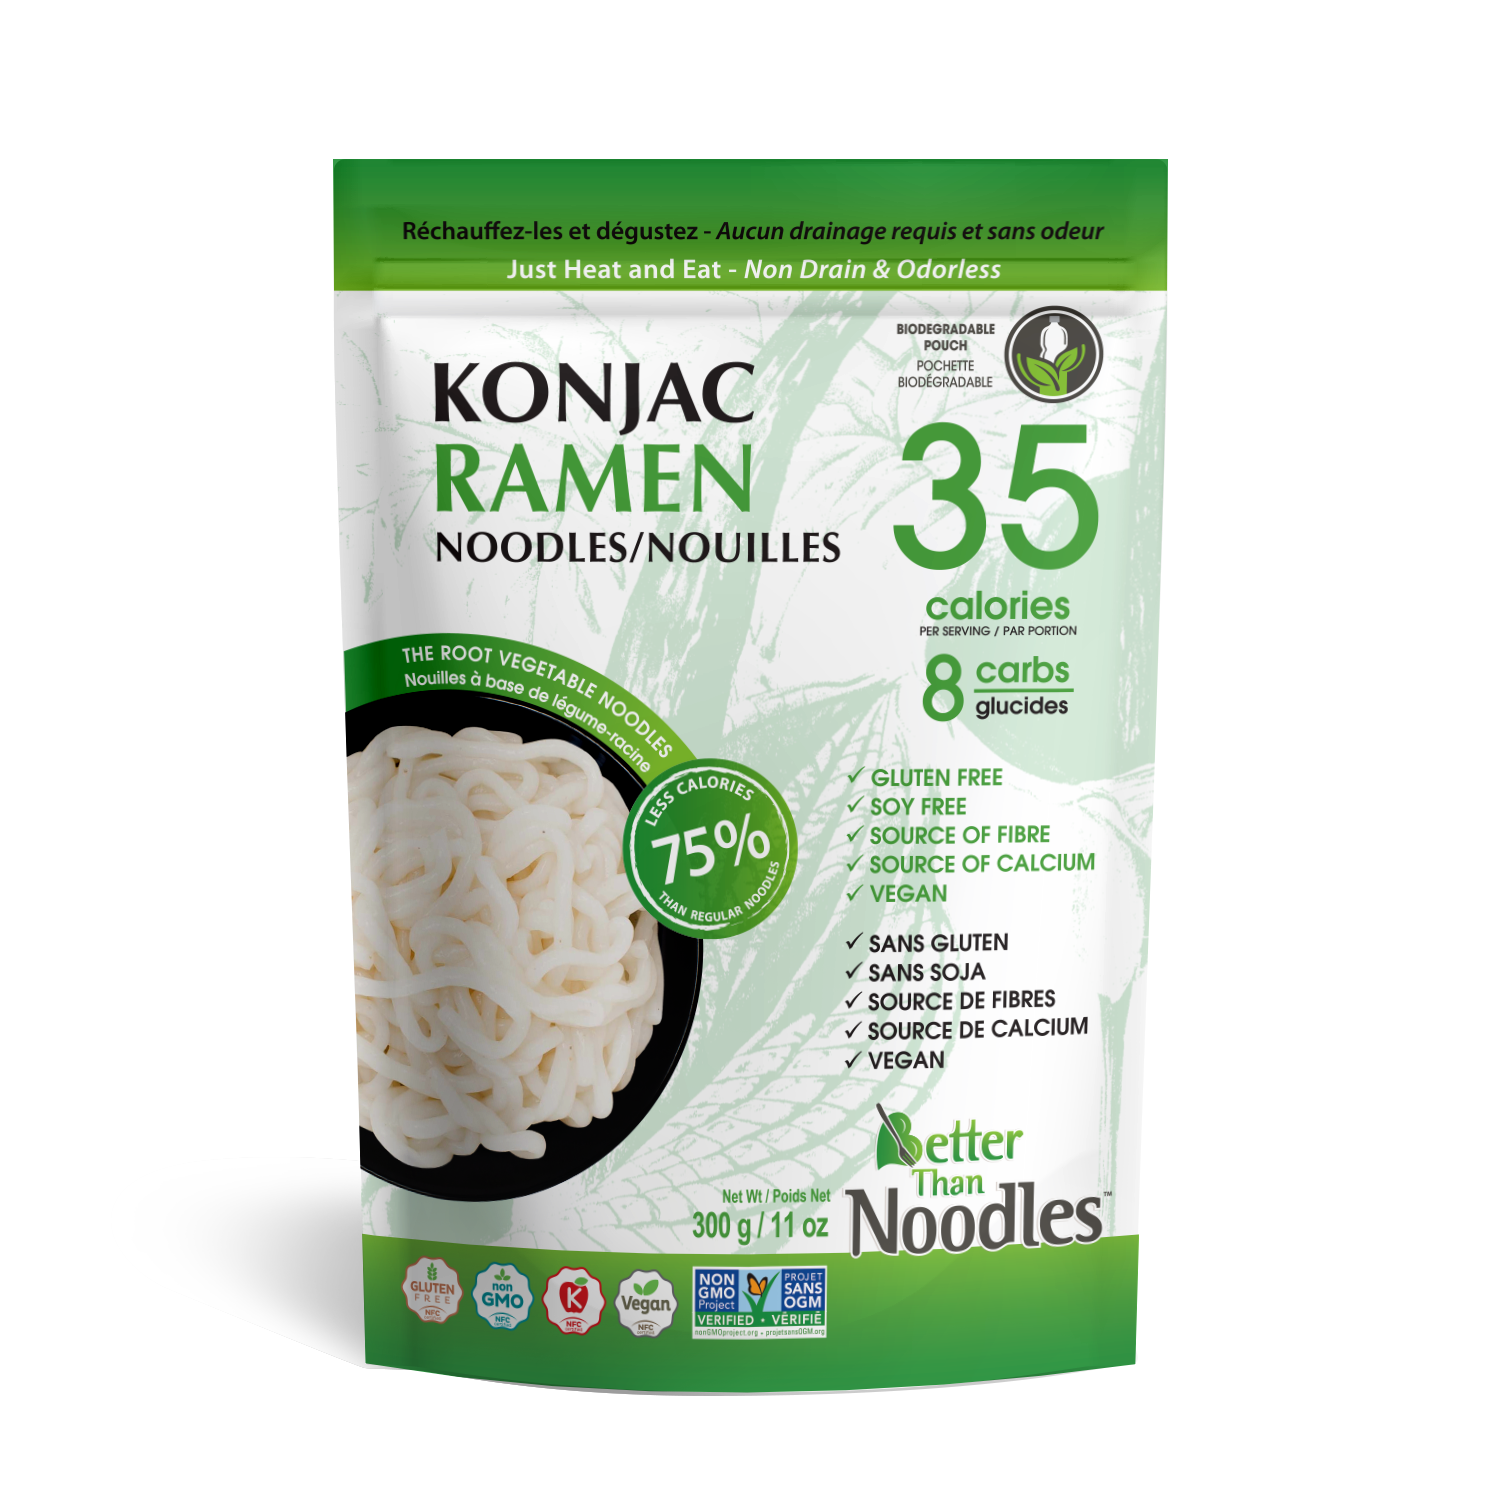 Better Than Non Drain Ramen Noodles - (300g)